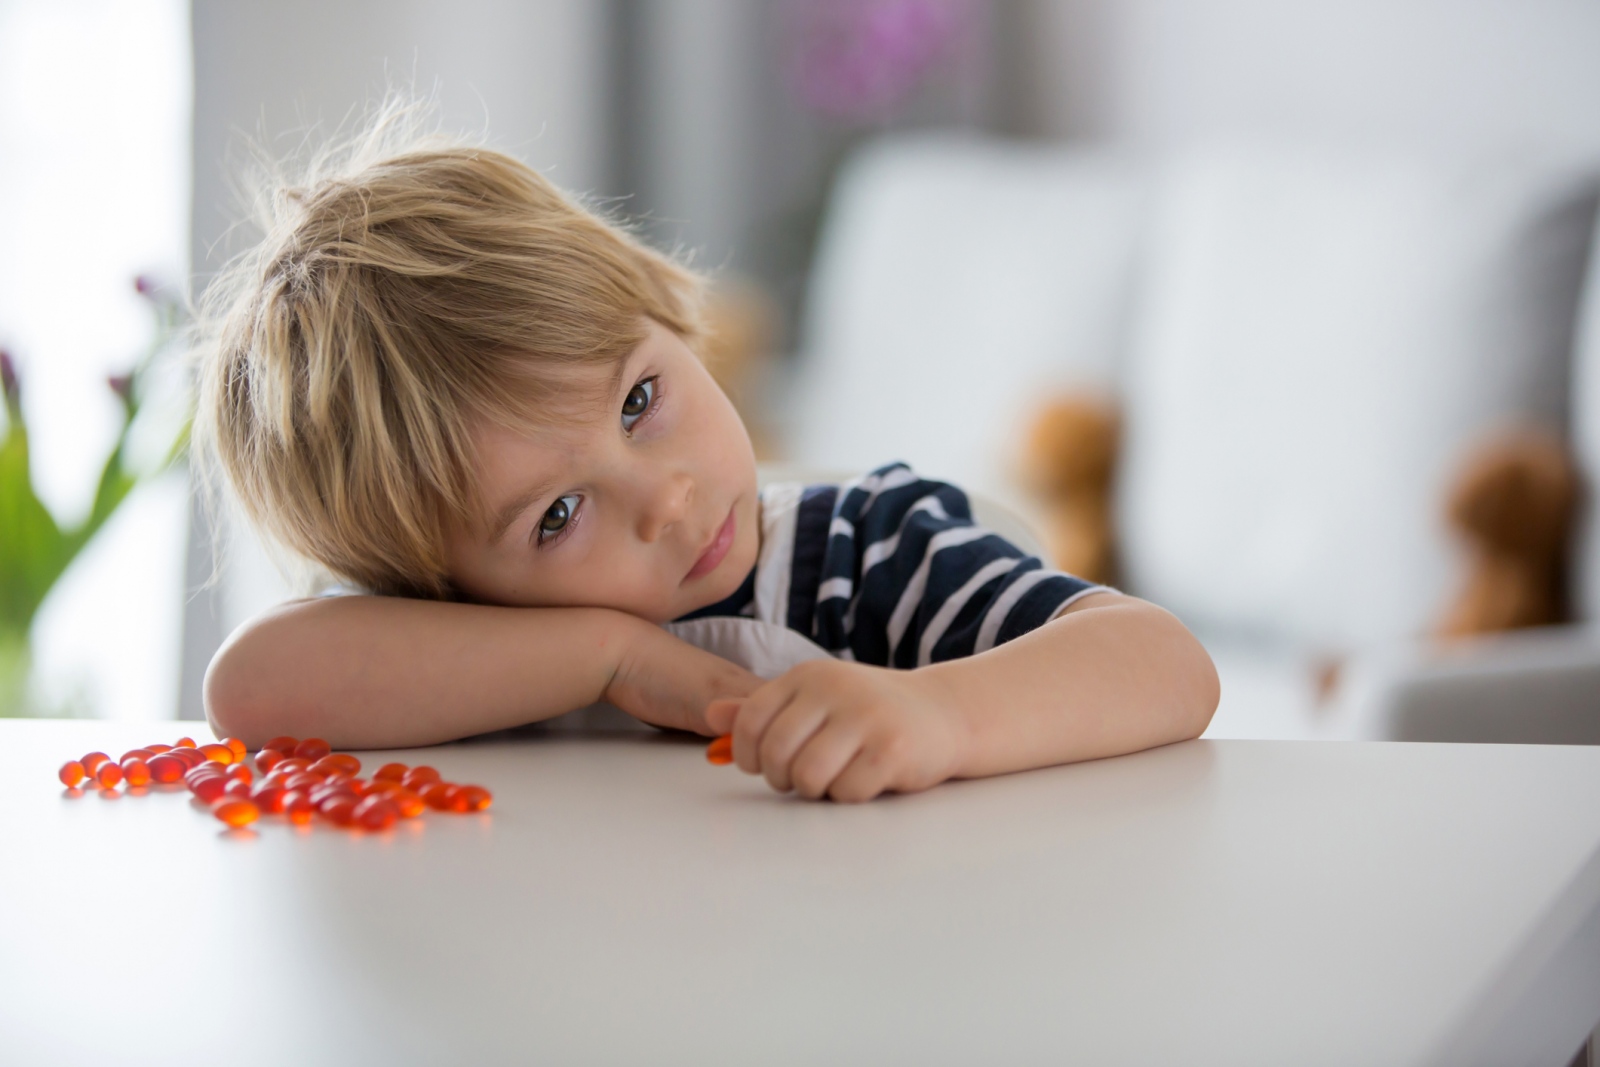 Az OMEGA-3 csökkentheti az ADHD tüneteket a gyerekeknél